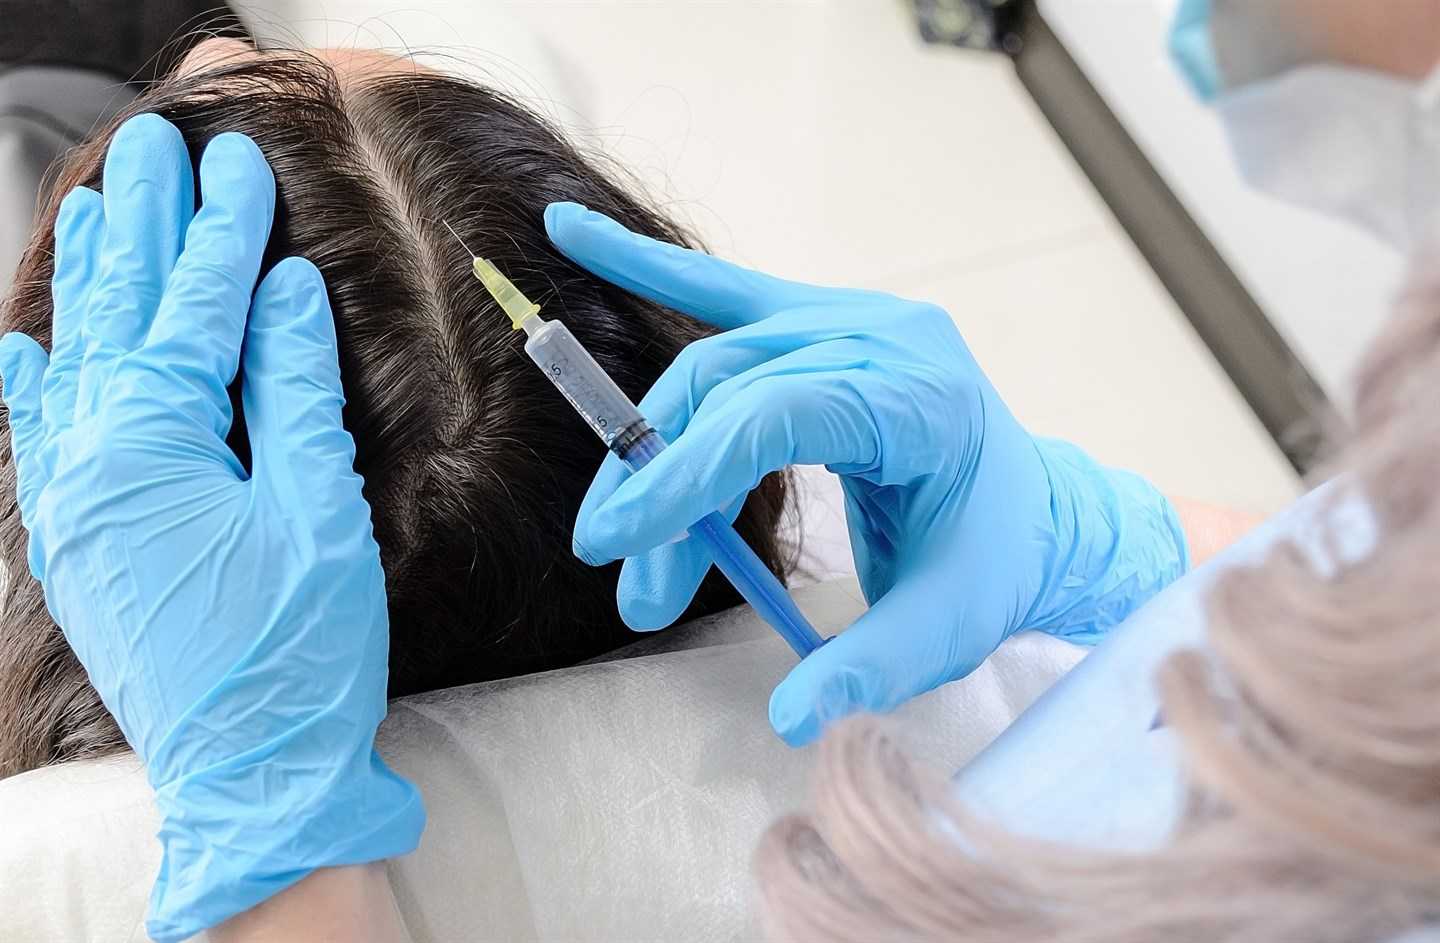 Ультразвуковое лечение волос: отзывы, инфракрасный аппарат для восстановления, его действие на структуру локонов, обзор лучших приборов